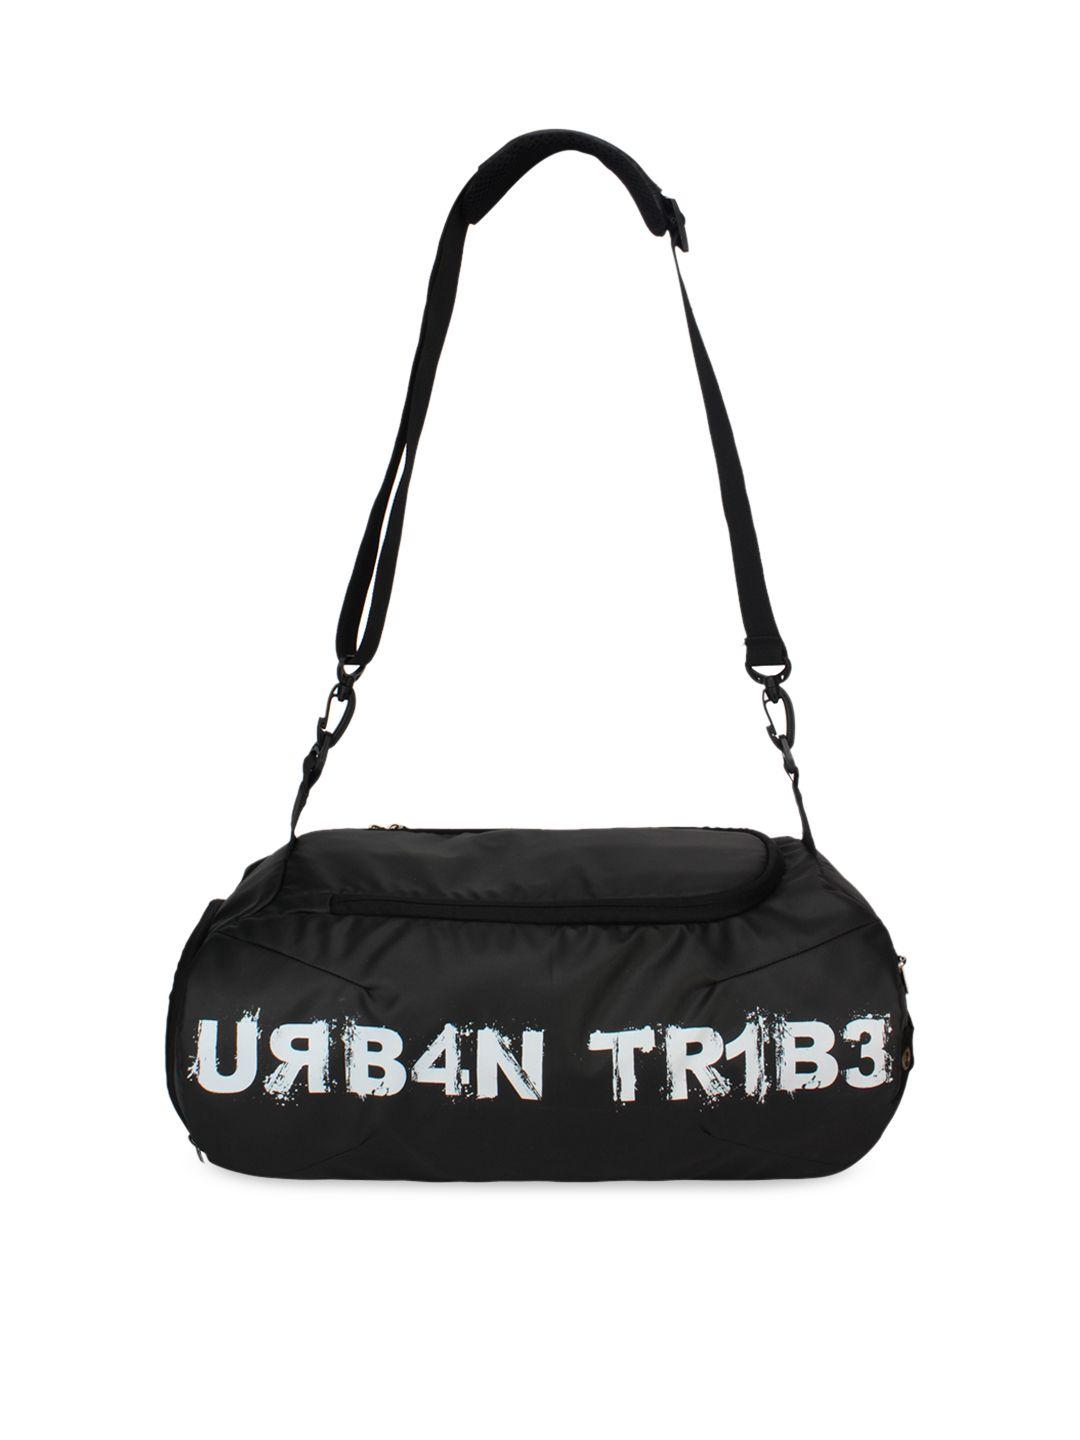 urban tribe plank black gym duffel bag